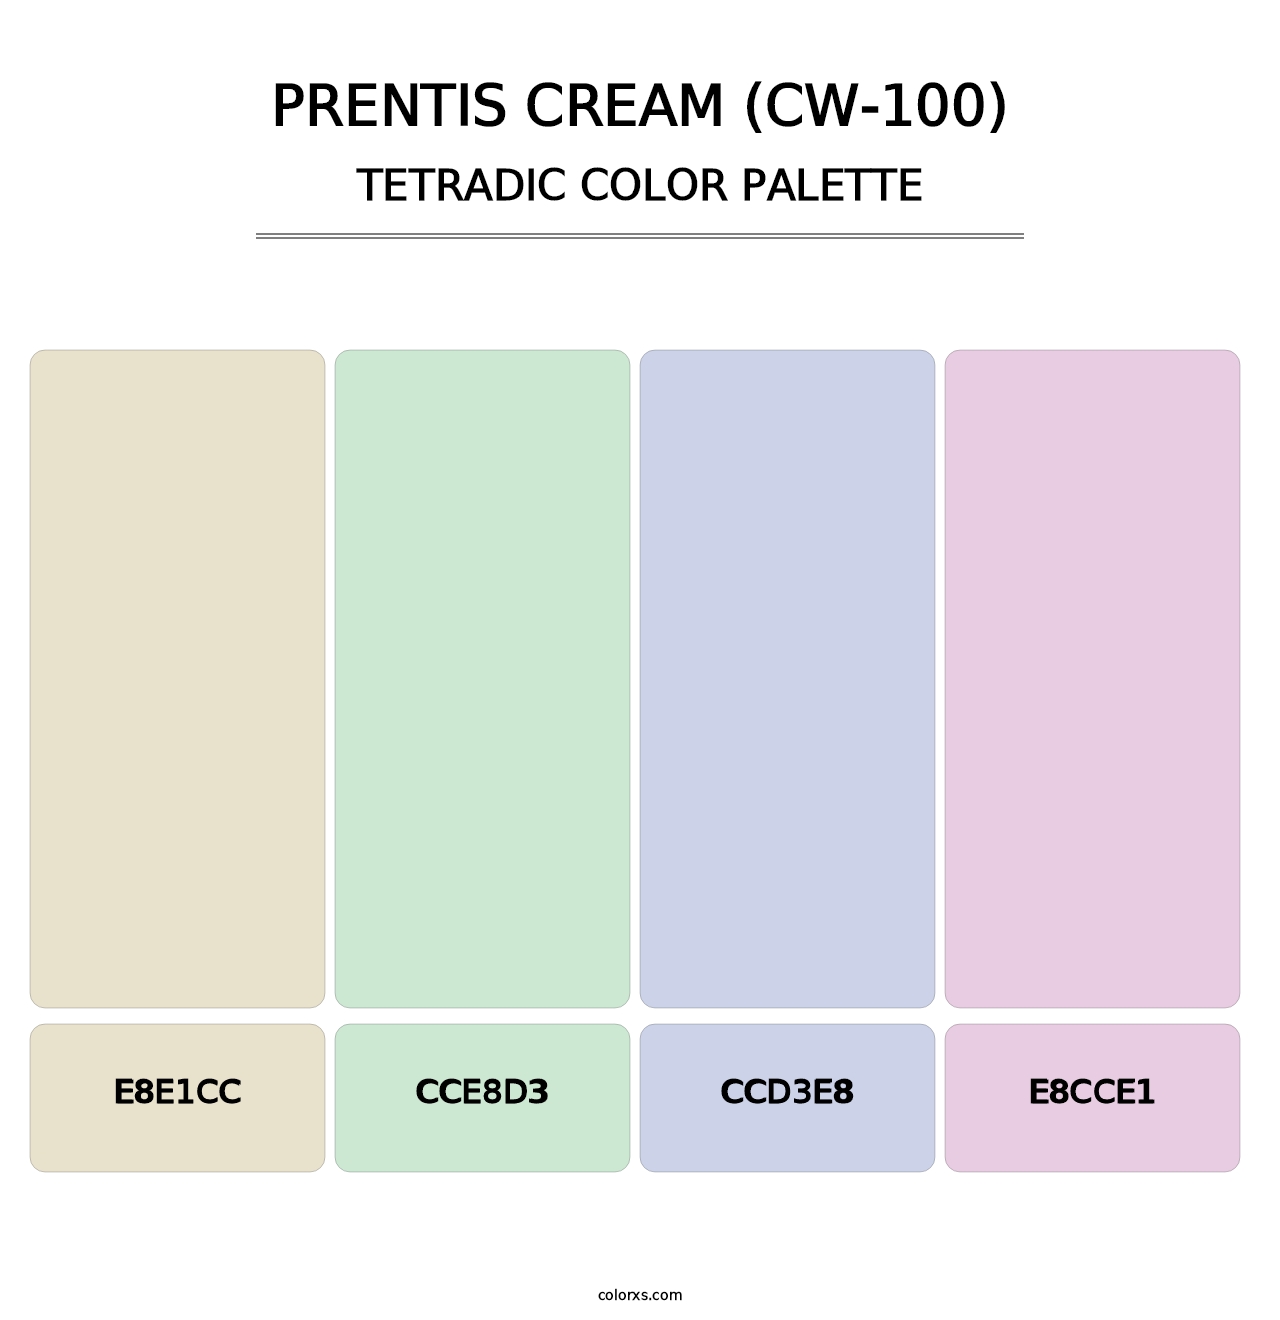 Prentis Cream (CW-100) - Tetradic Color Palette